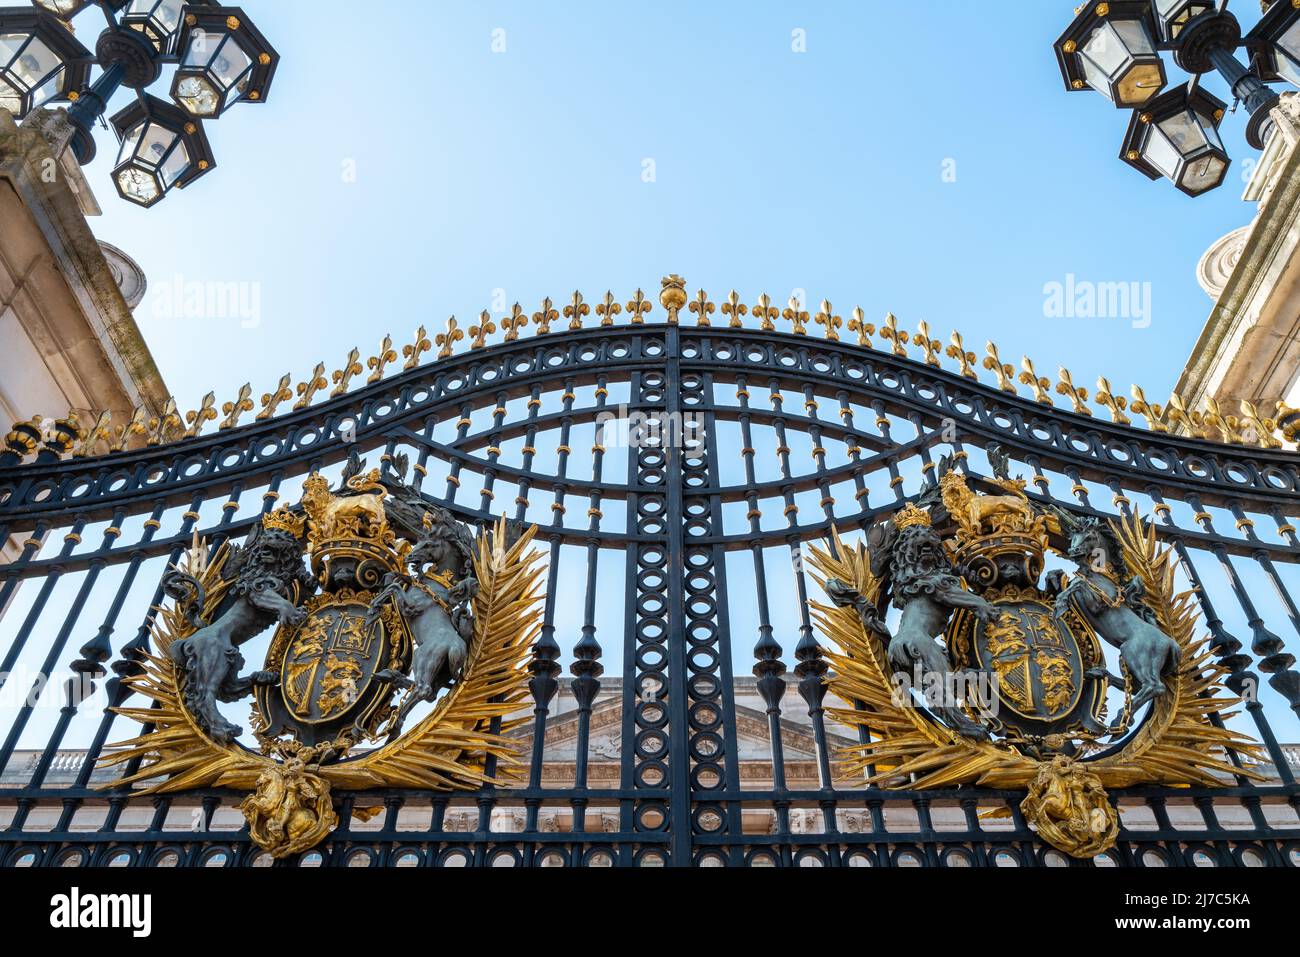 Londres, Reino Unido - 26 de marzo de 2022: Entrada a la Puerta Dominion del Palacio de Buckingham, Londres, con escudo de armas y linternas ornamentadas. Residencia de la Reina Elizabe Foto de stock